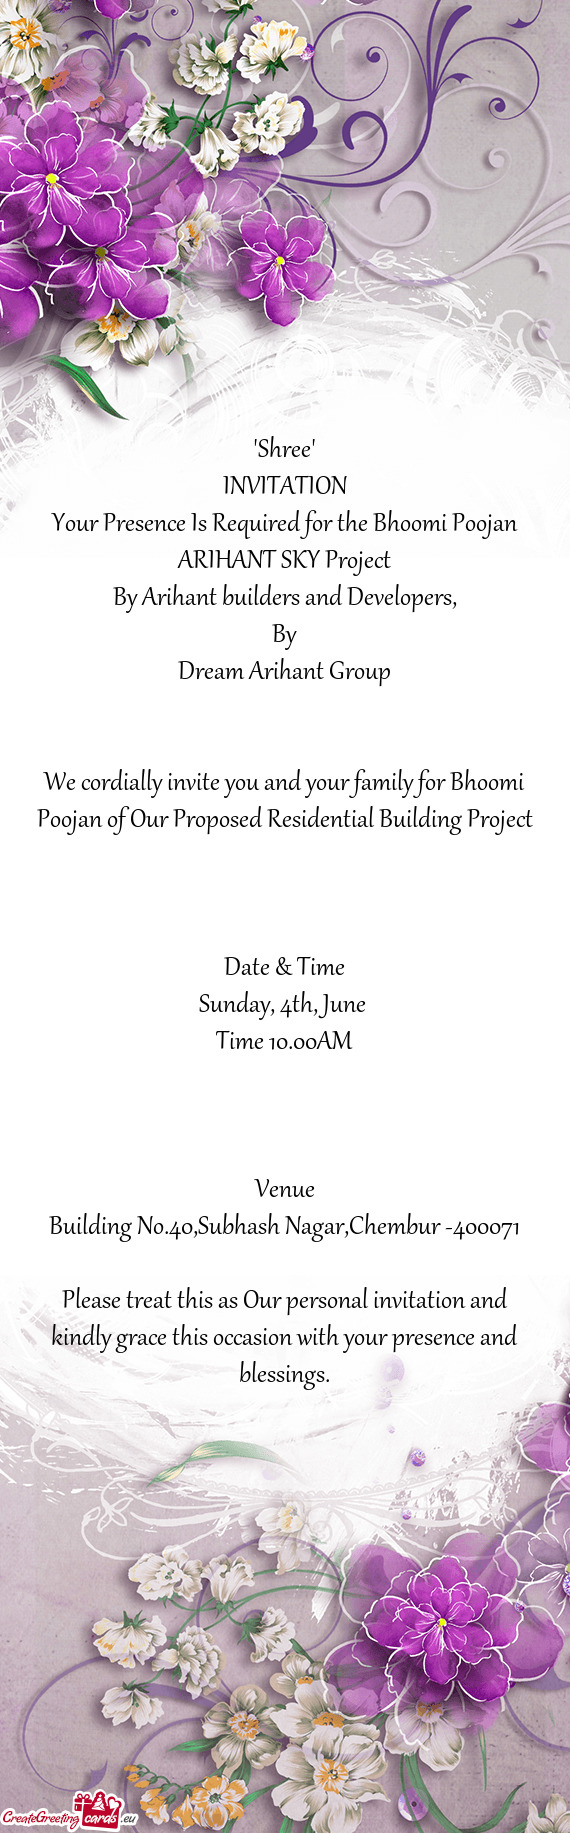 Dream Arihant Group